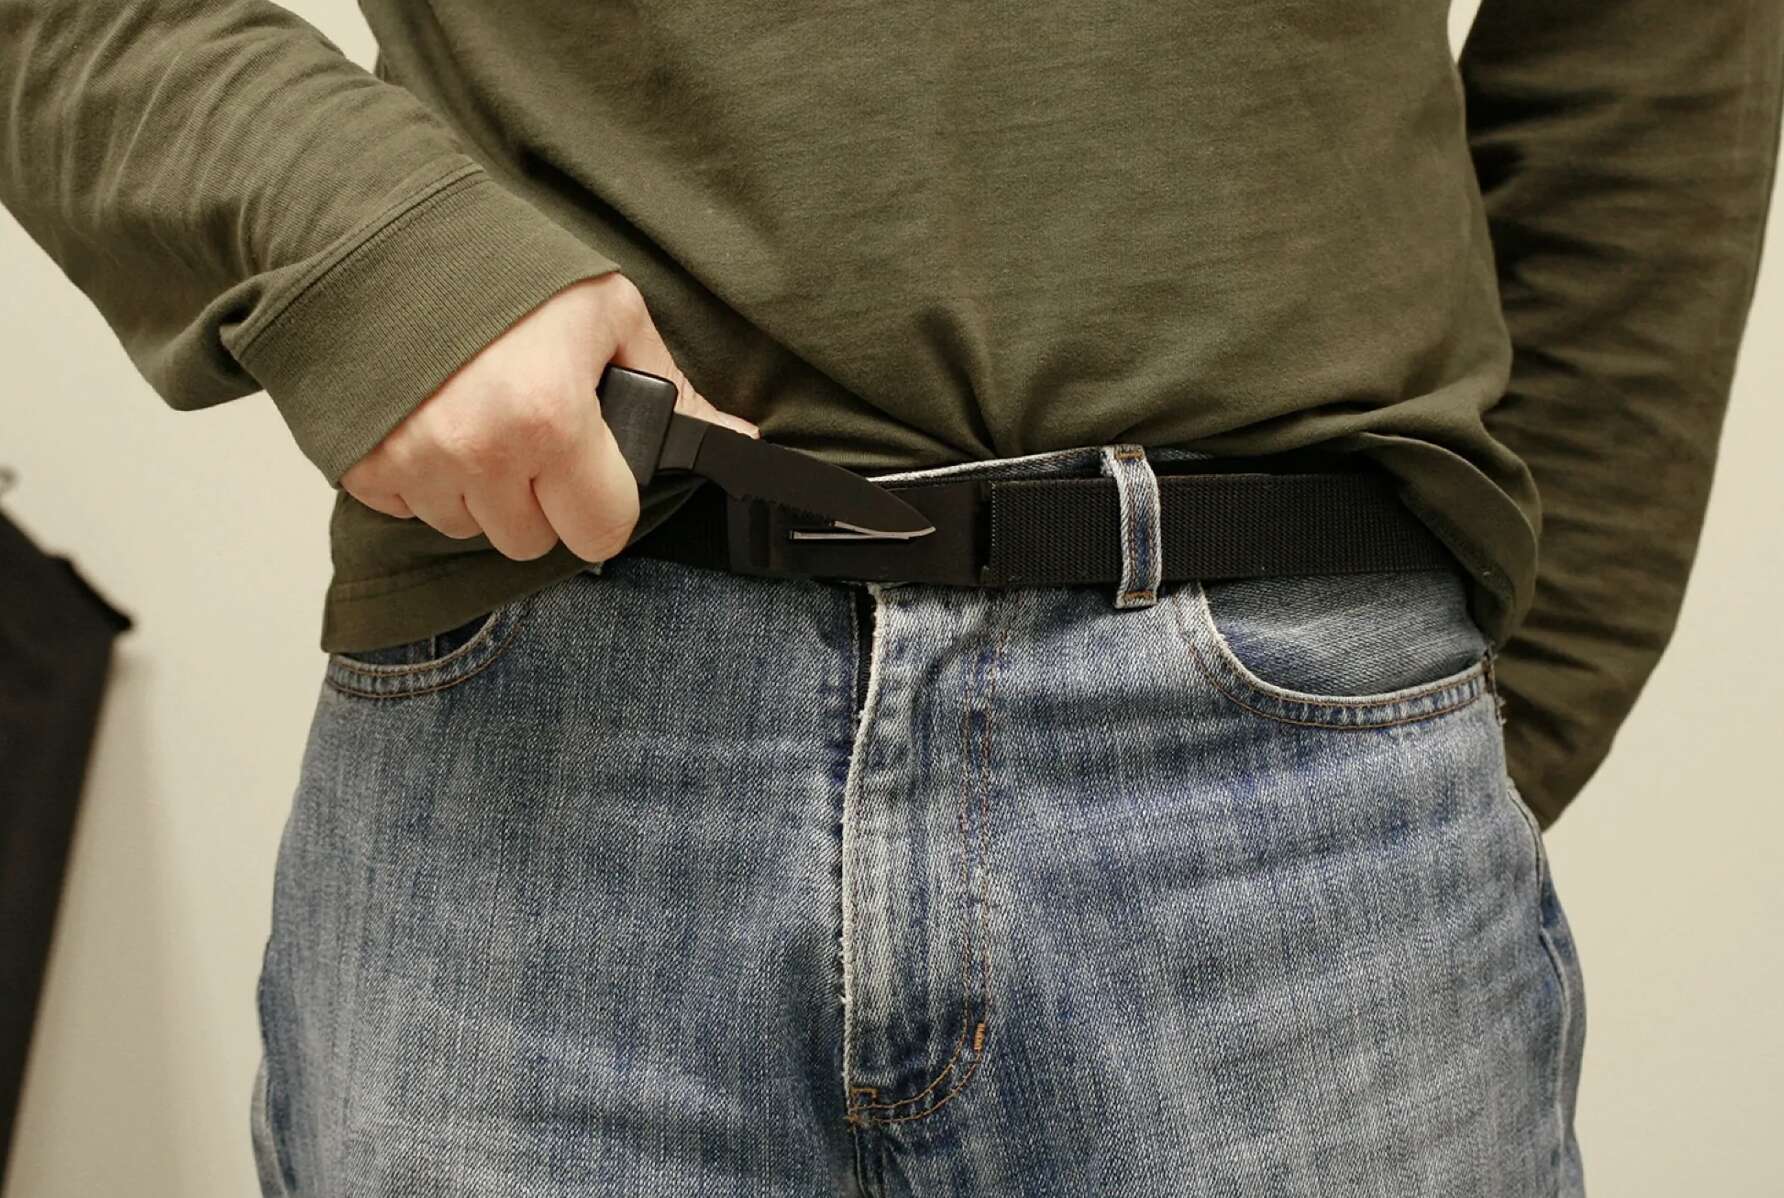 Black Belt Concealed Self Defense Knife